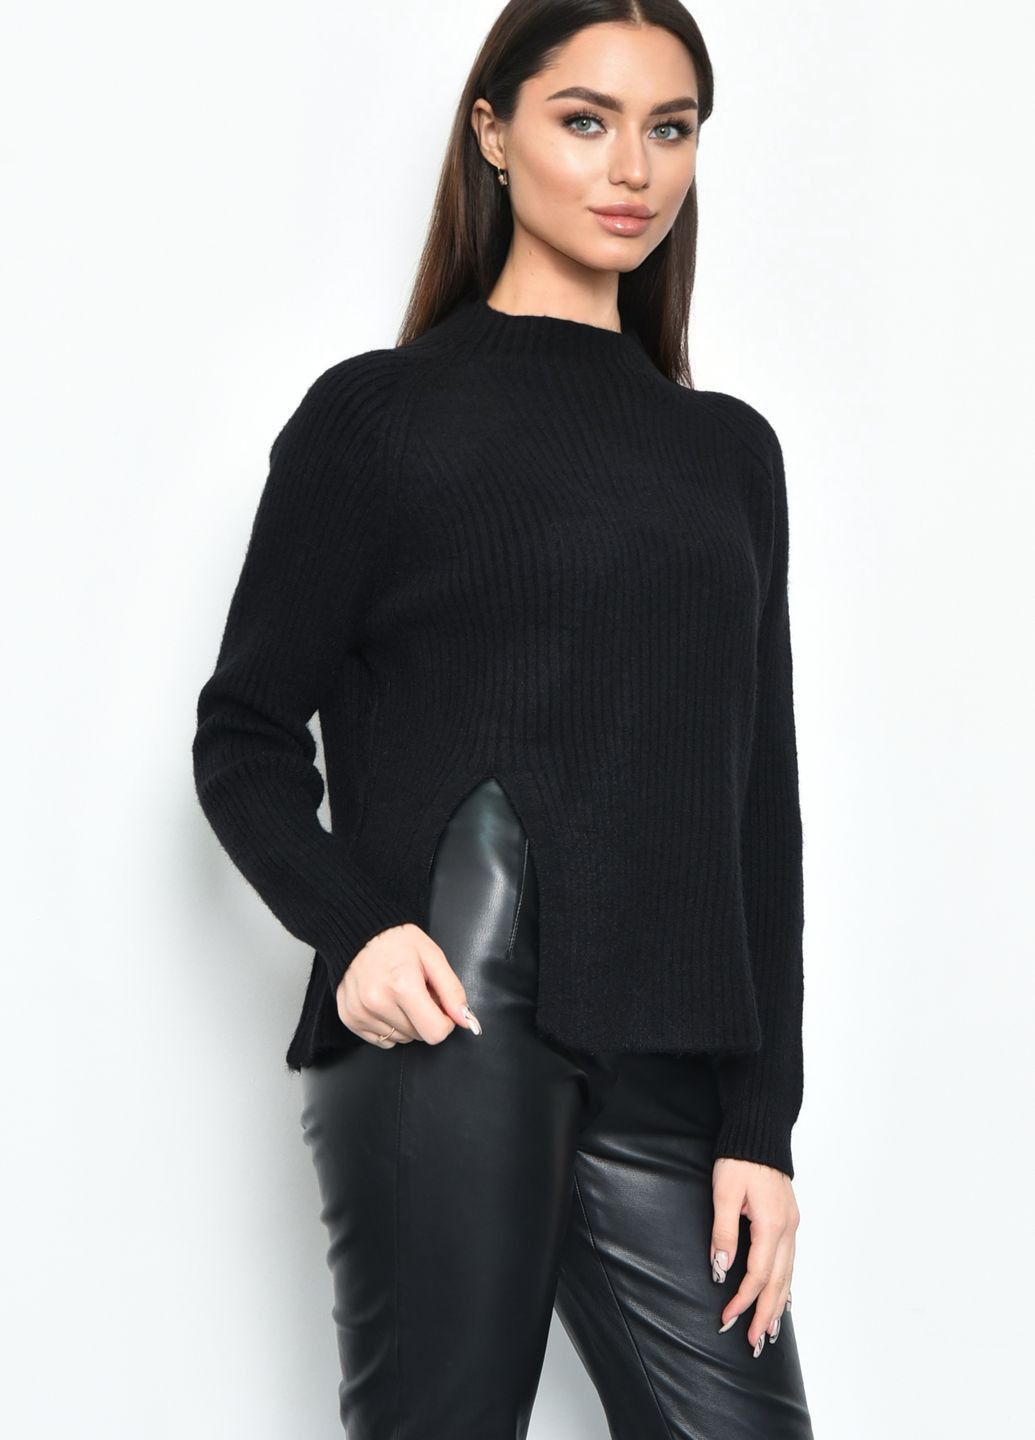 Черный зимний свитер женский акриловый черного цвета пуловер Let's Shop